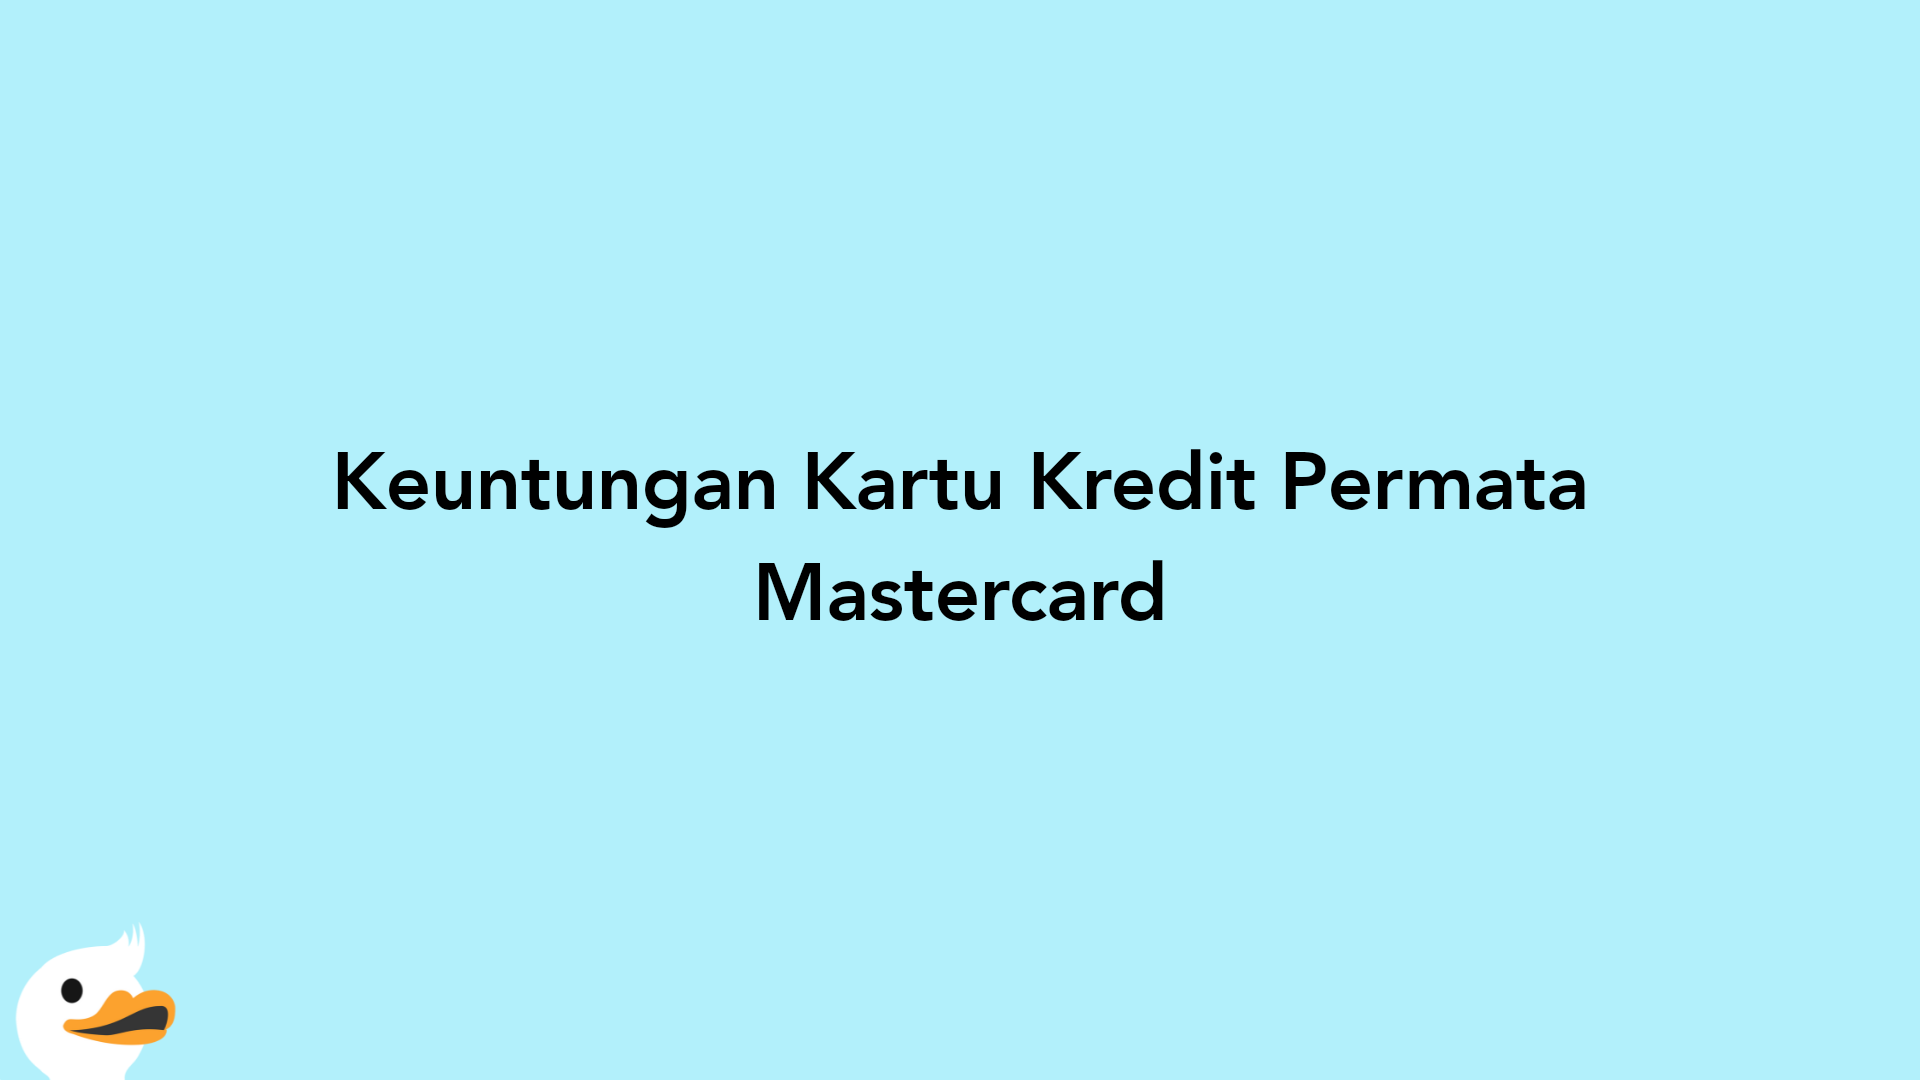 Keuntungan Kartu Kredit Permata Mastercard